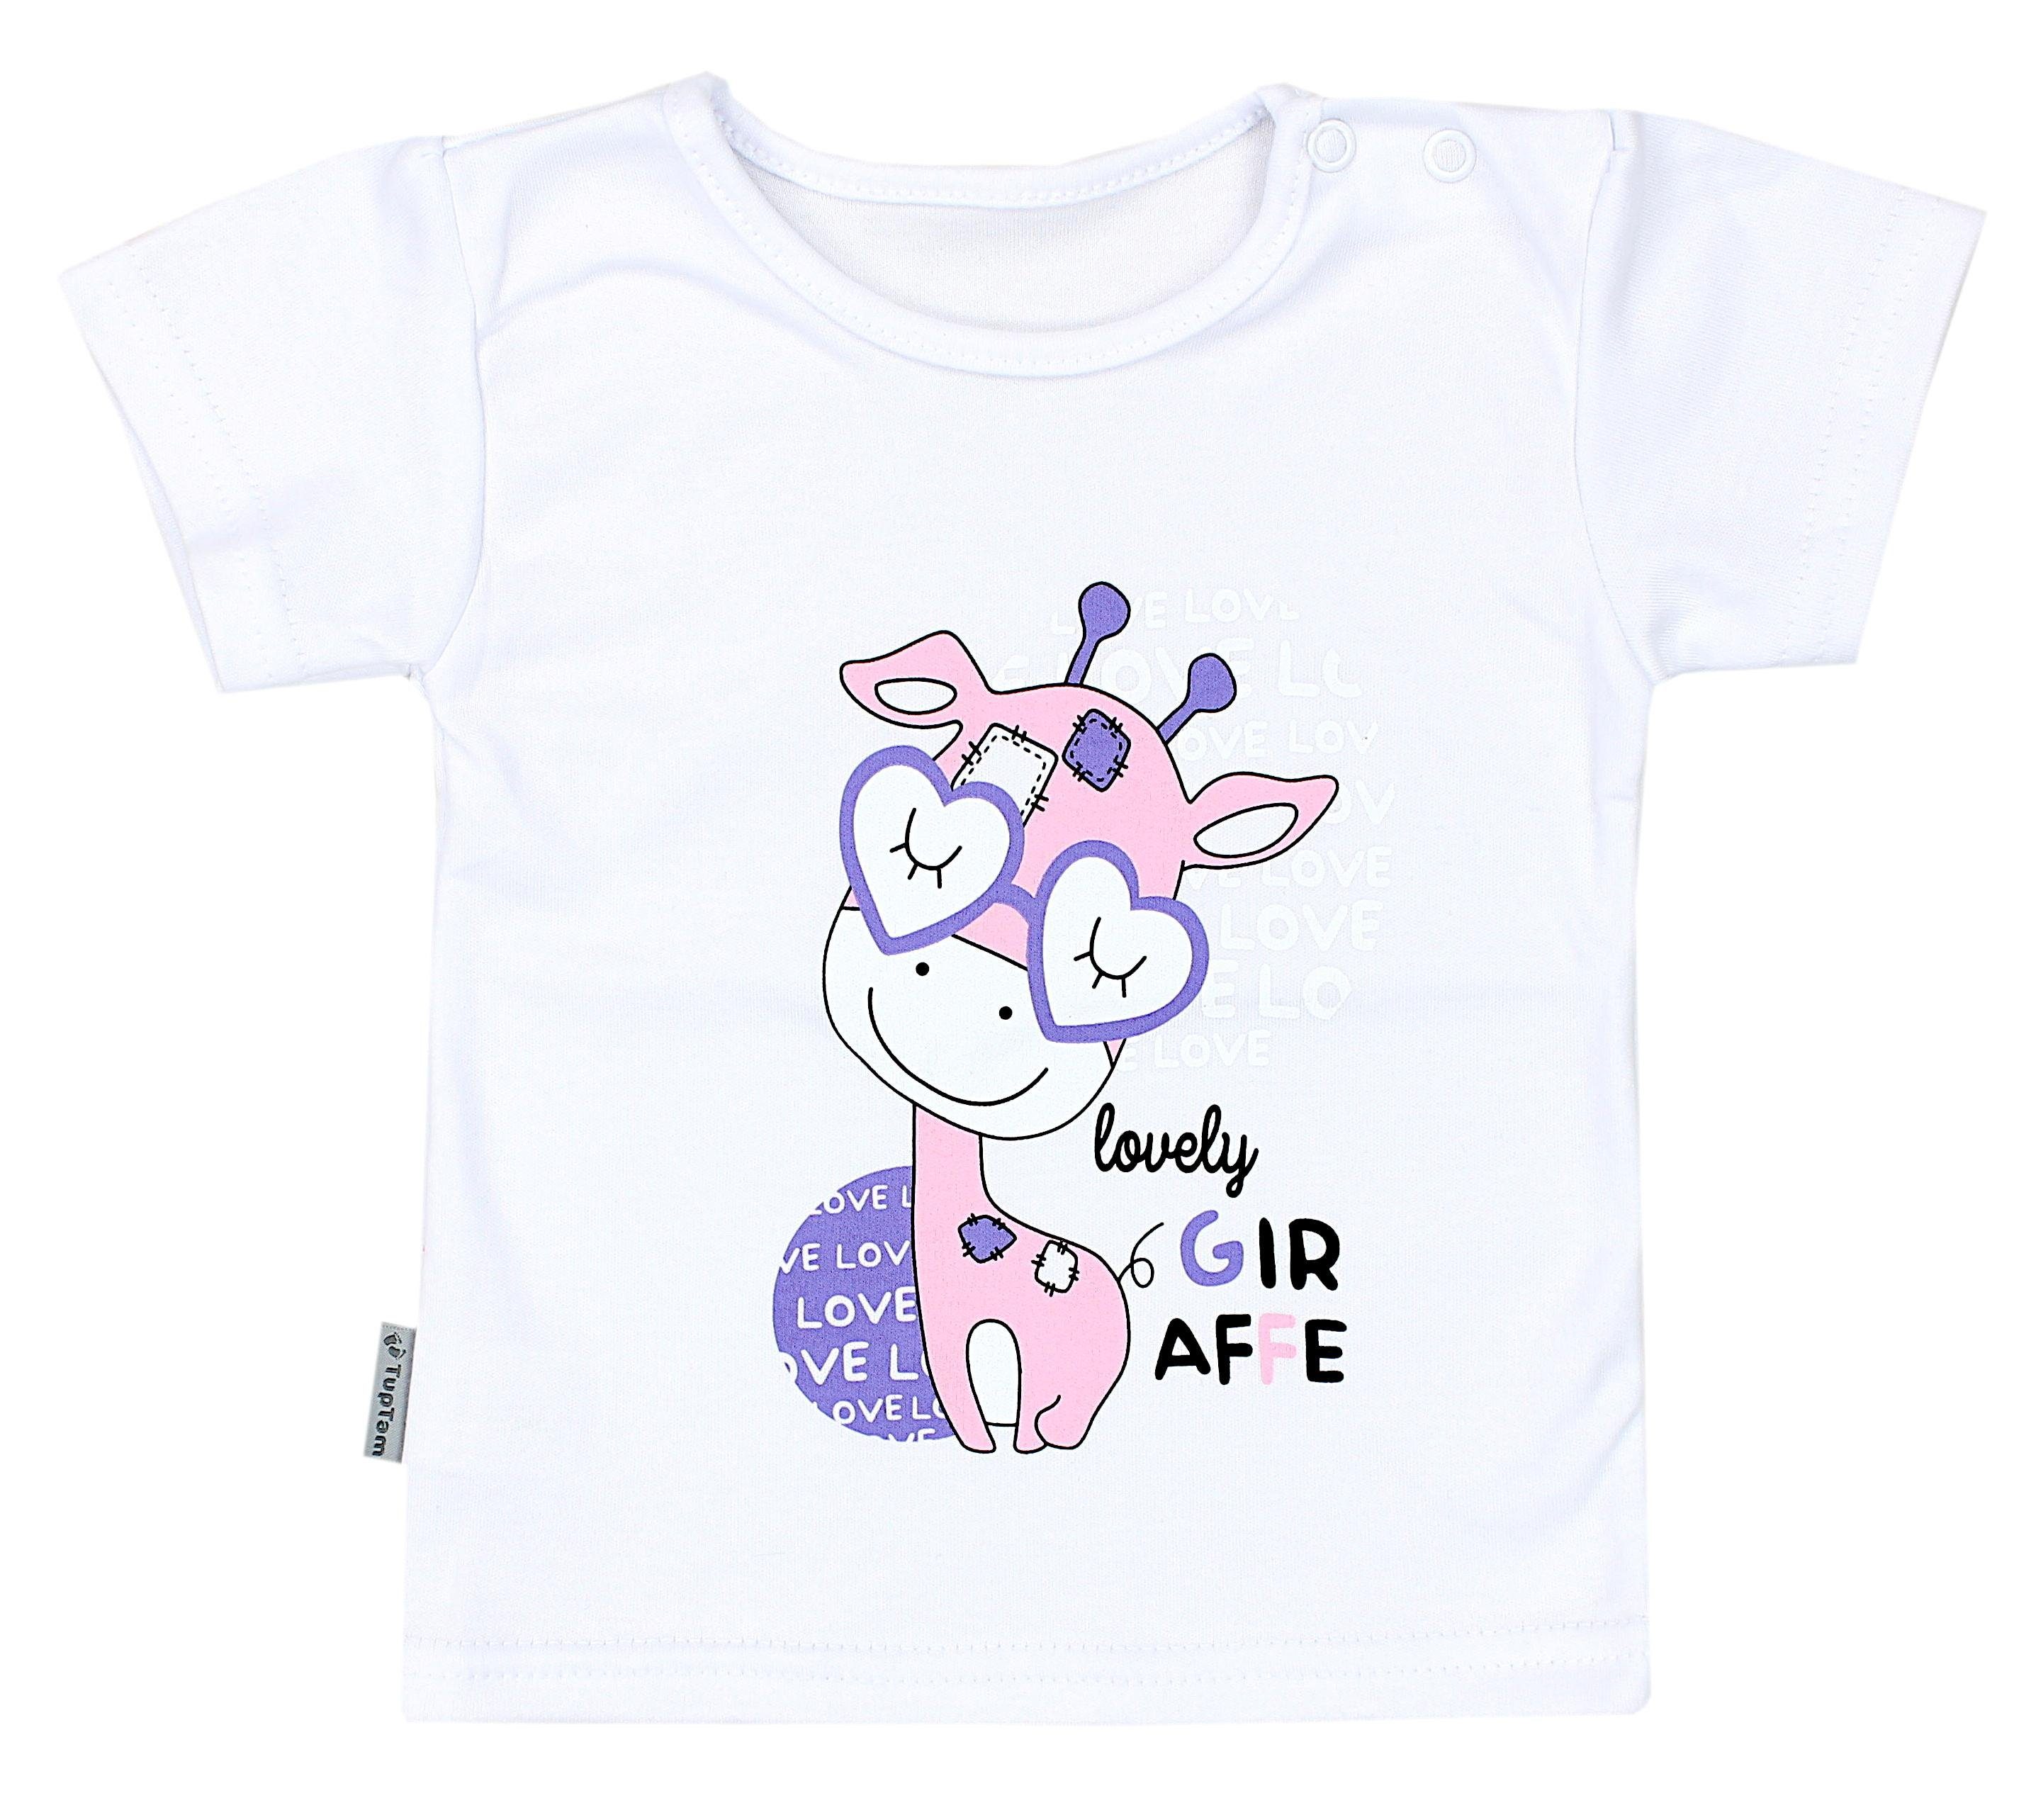 Bunt TupTam Streifen Set Gemustert Baby T-Shirt Weiß Mädchen Kurzarm Rosa Kaninchen TupTam Giraffe T-Shirt 5er Grau